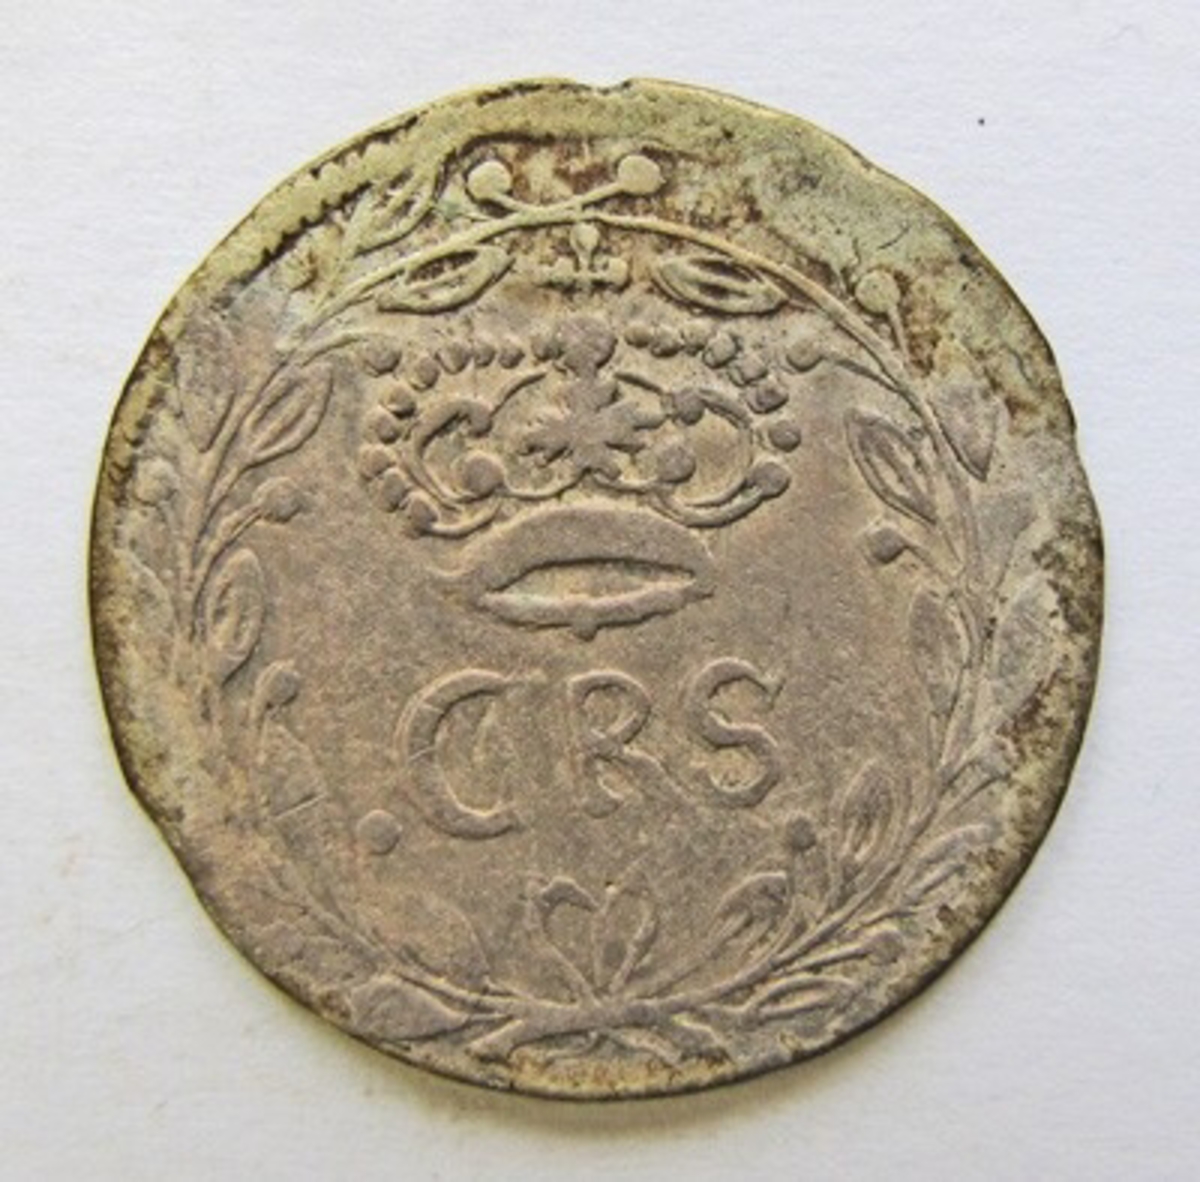 Karl XI, 2 (?) öre silvermynt .Präglat i Reval (Tallin) 167?